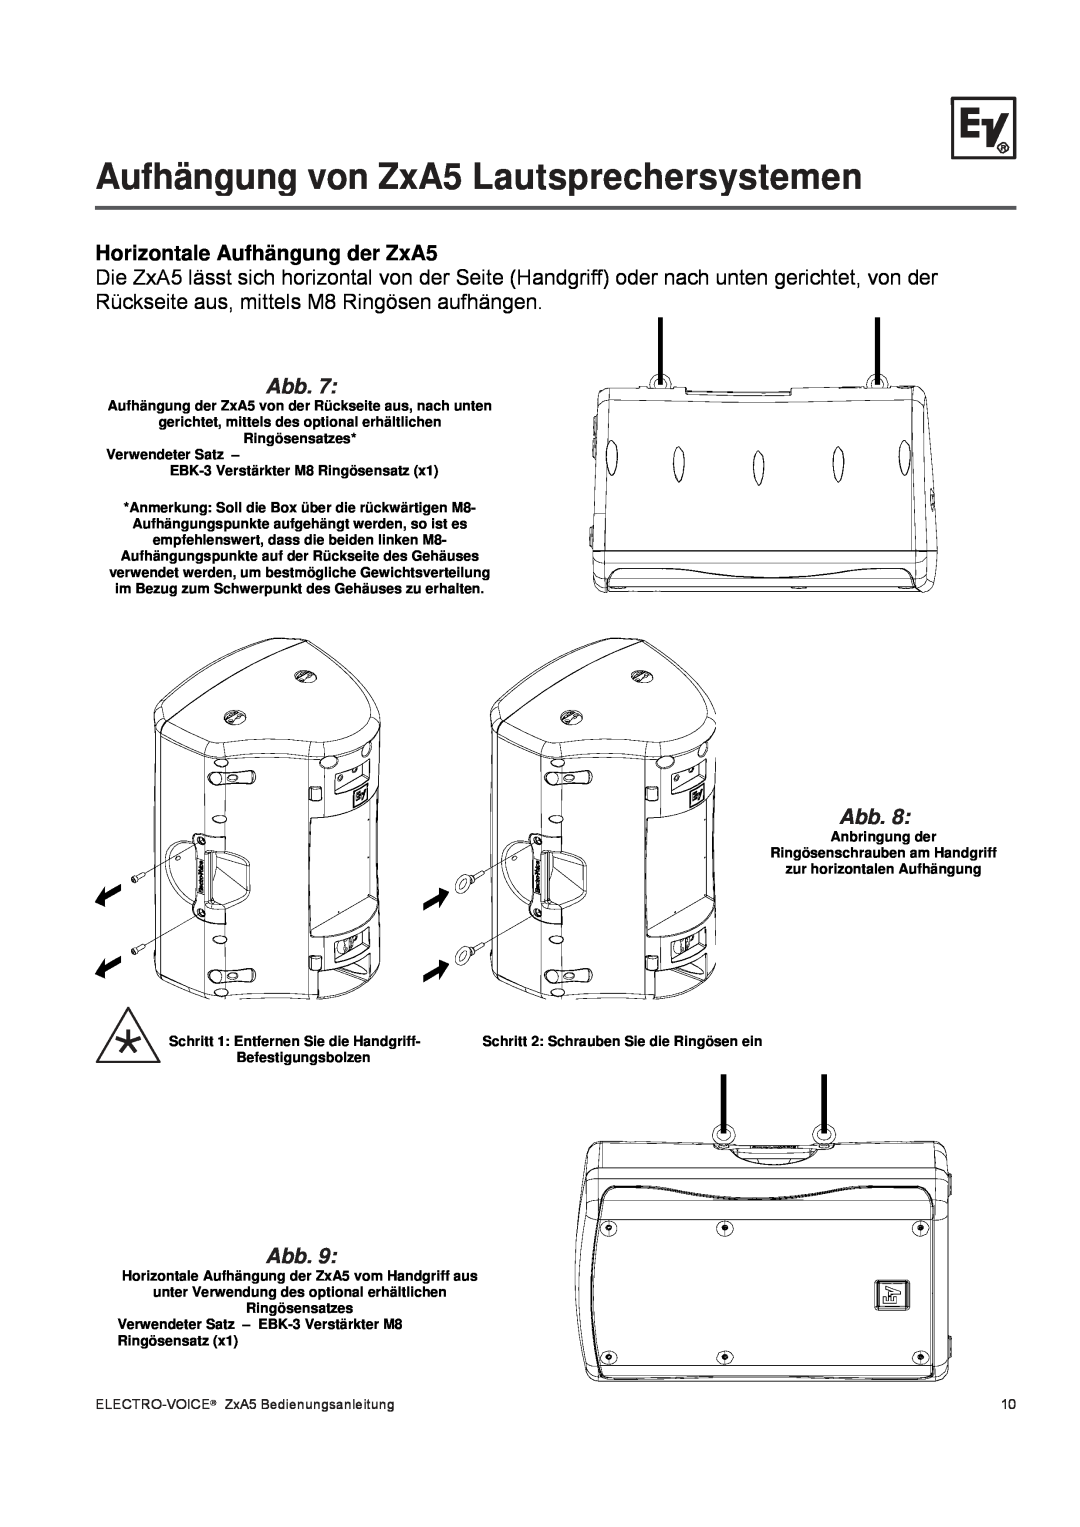 Pentax ZXA5-90, ZXA5-60 owner manual Horizontale Aufhängung der ZxA5, Aufhängung von ZxA5 Lautsprechersystemen, Abb 